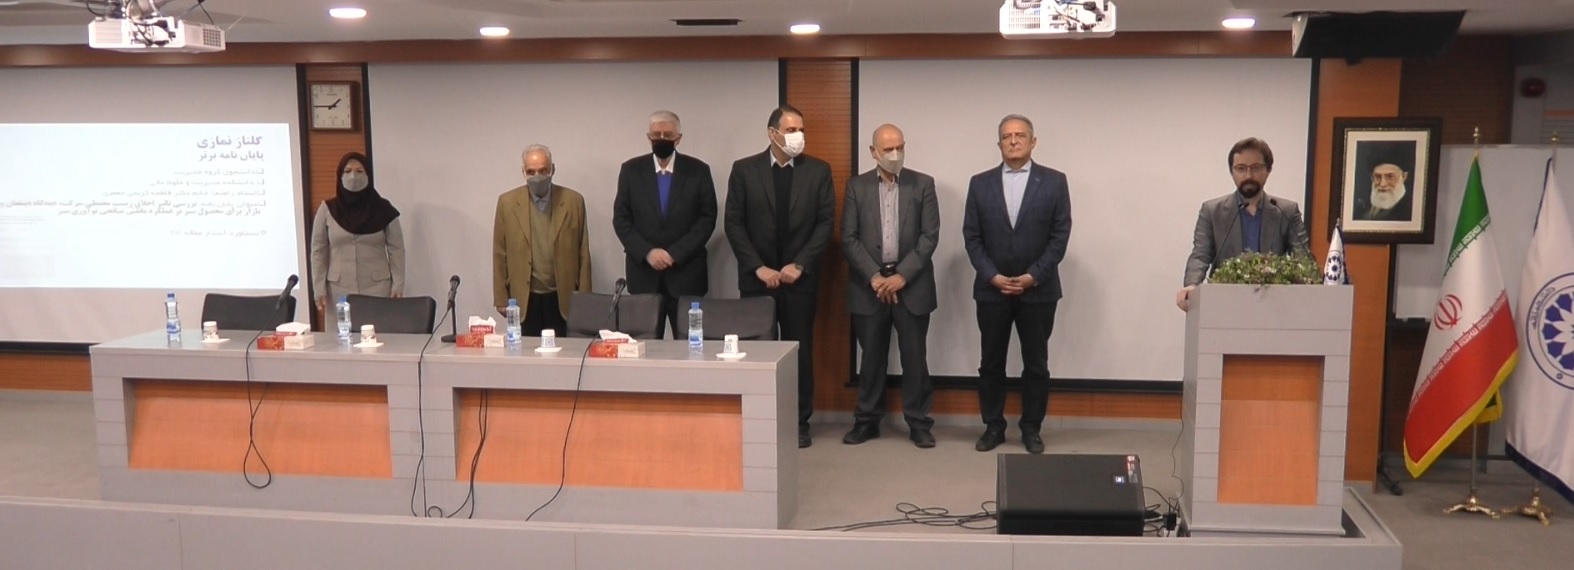 مراسم تجلیل از برگزیدگان پژوهشی دانشگاه خاتم در روز پژوهش 1400